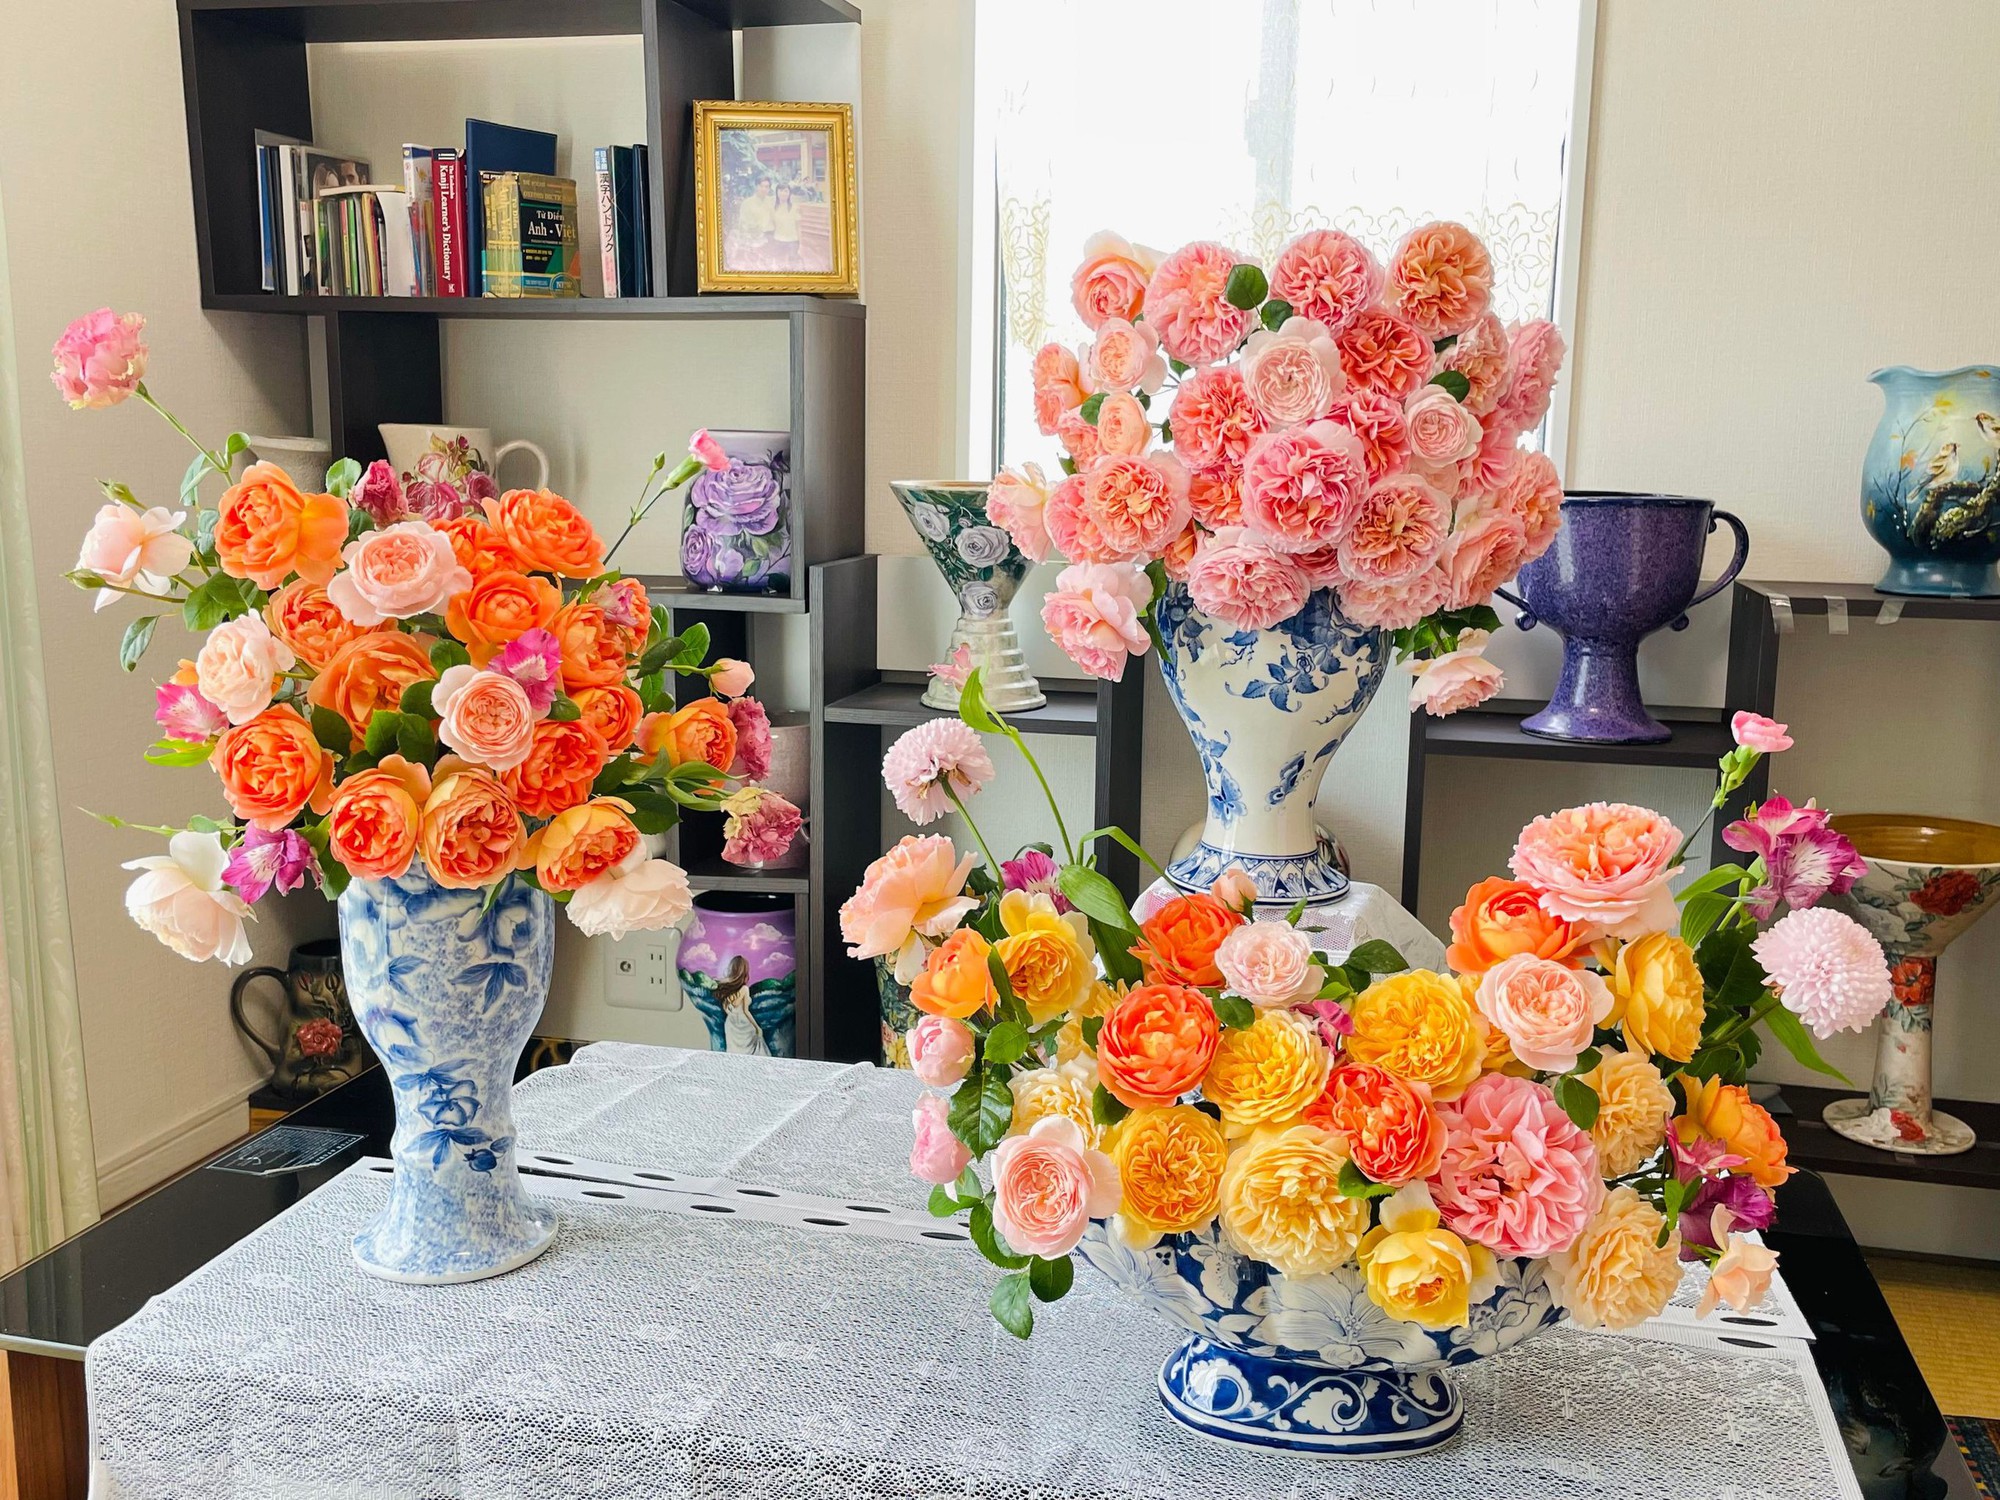 Ngôi nhà lúc nào cũng thơm nức mùi hoa vì có vườn hồng hơn 80 loại của mẹ Việt ở Nhật- Ảnh 24.